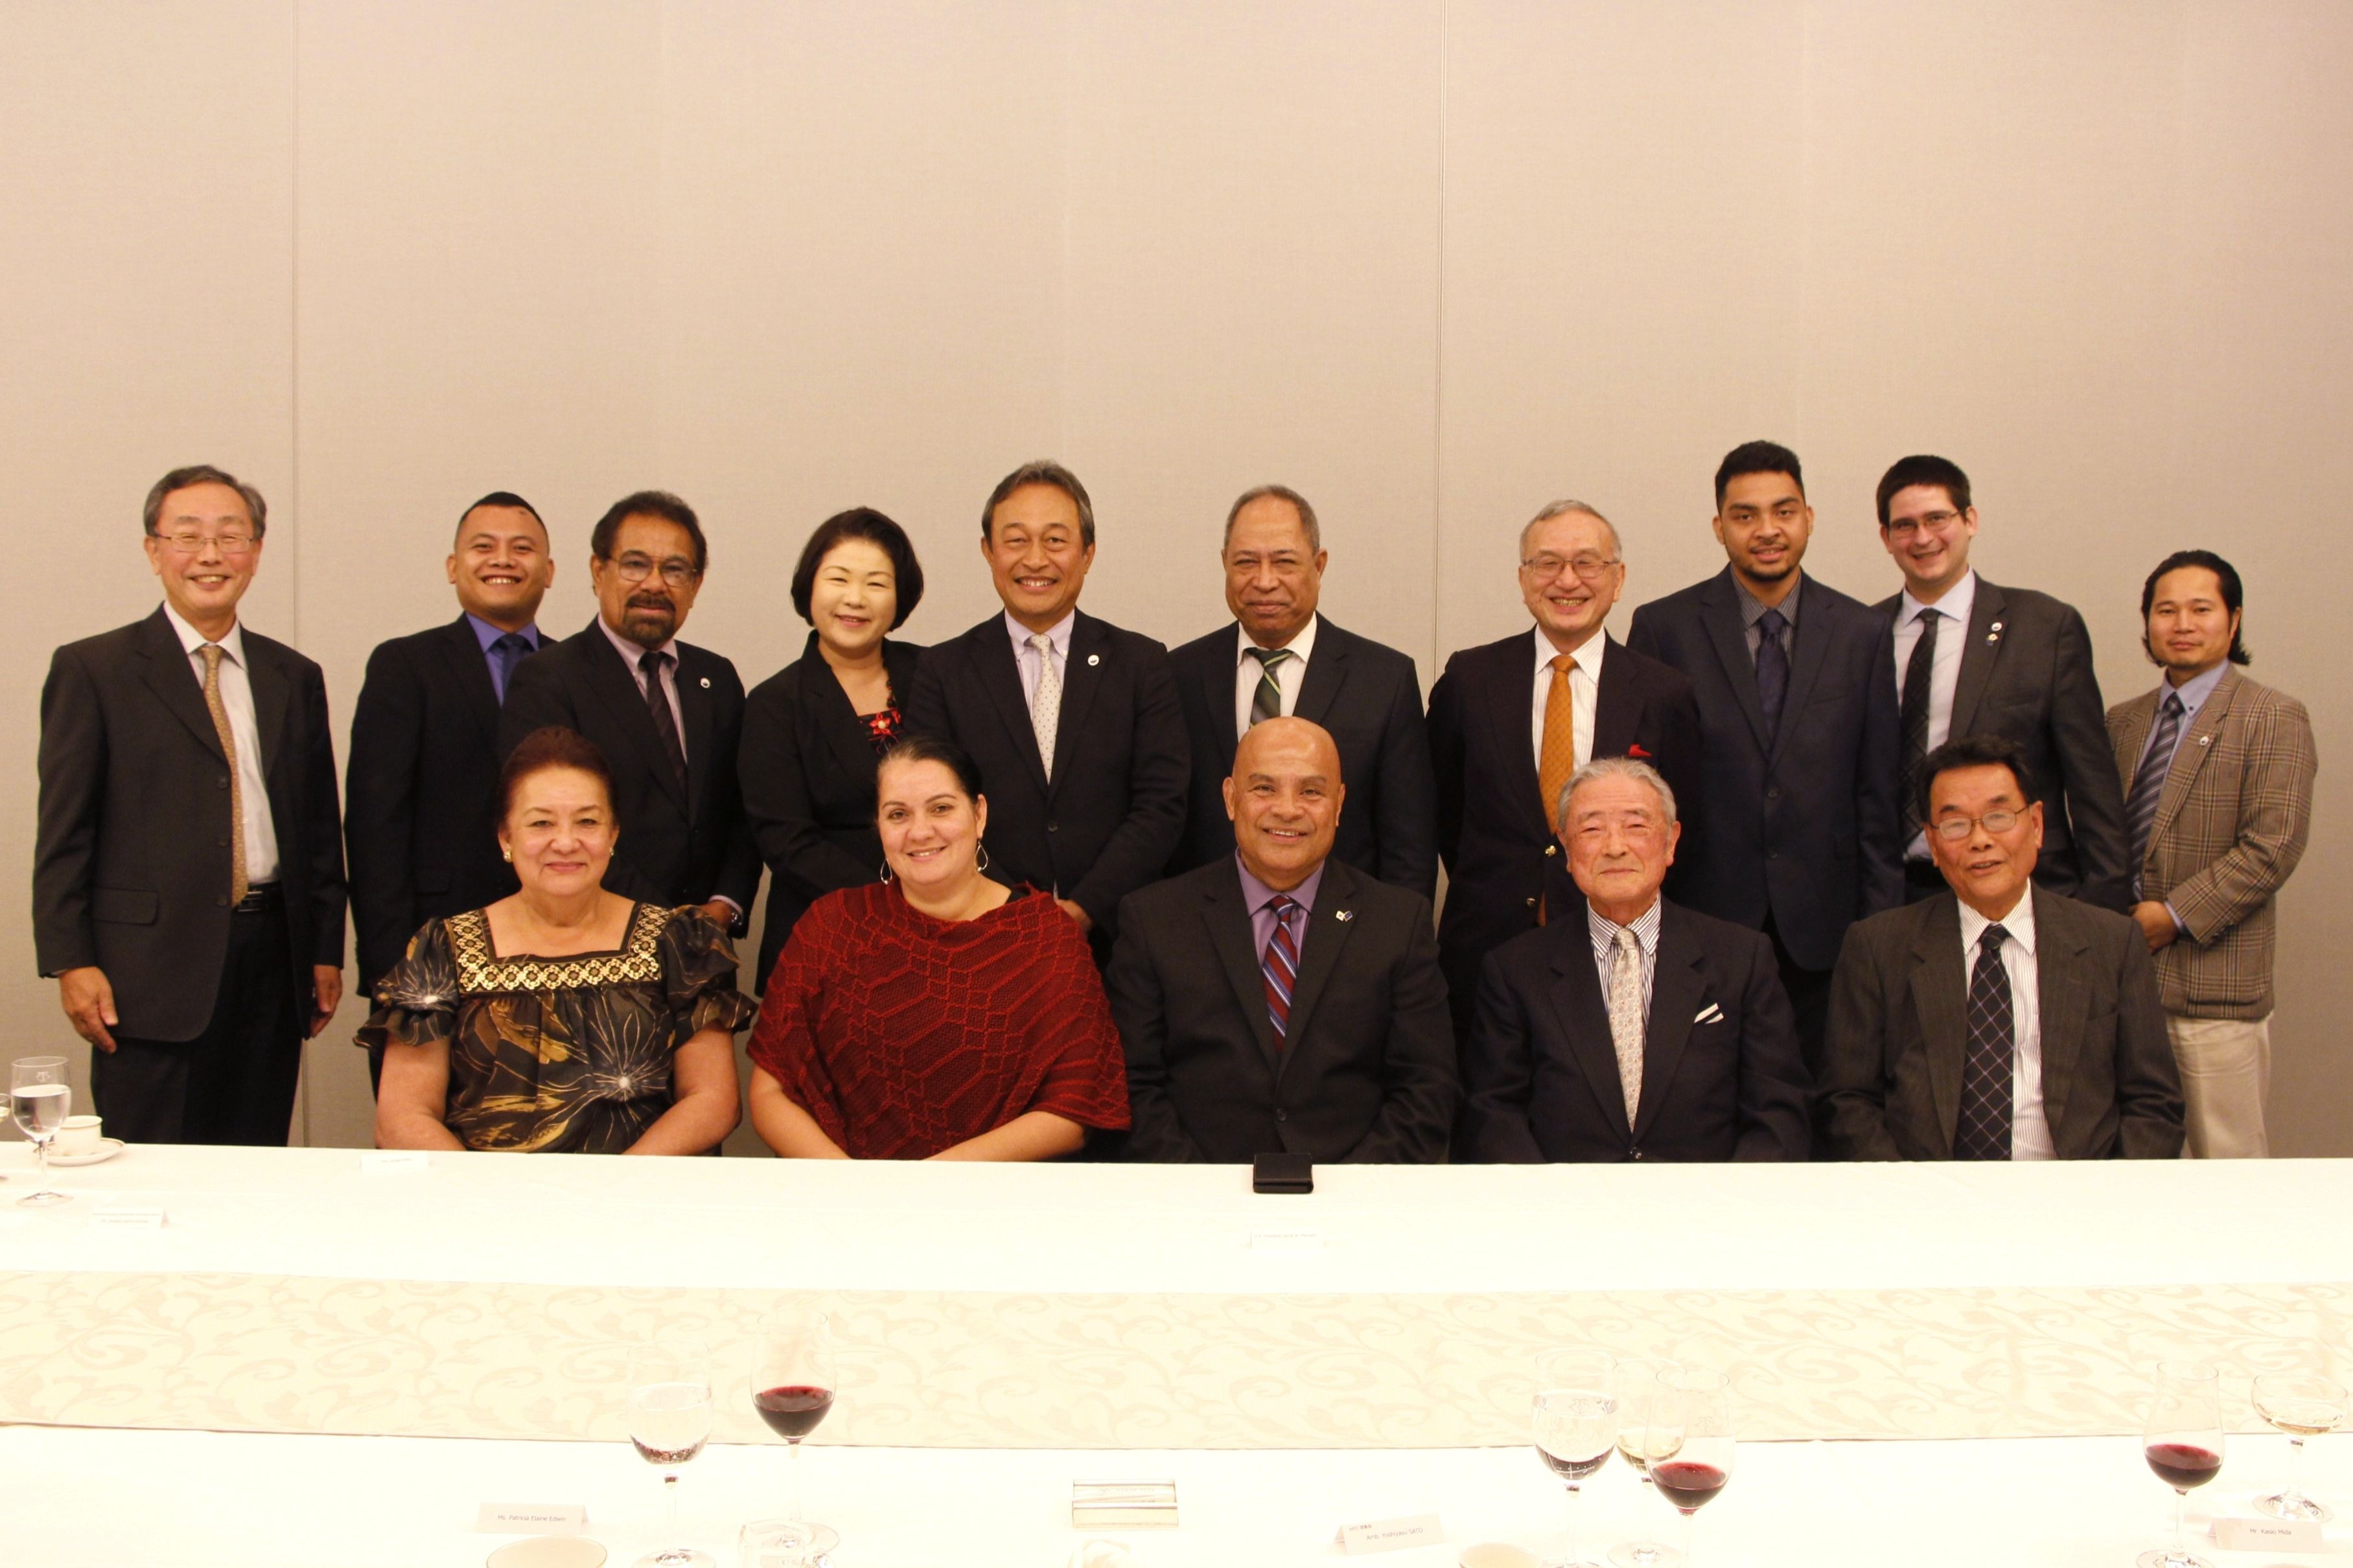 パニュエロ・ミクロネシア連邦大統領一行 歓迎夕食会